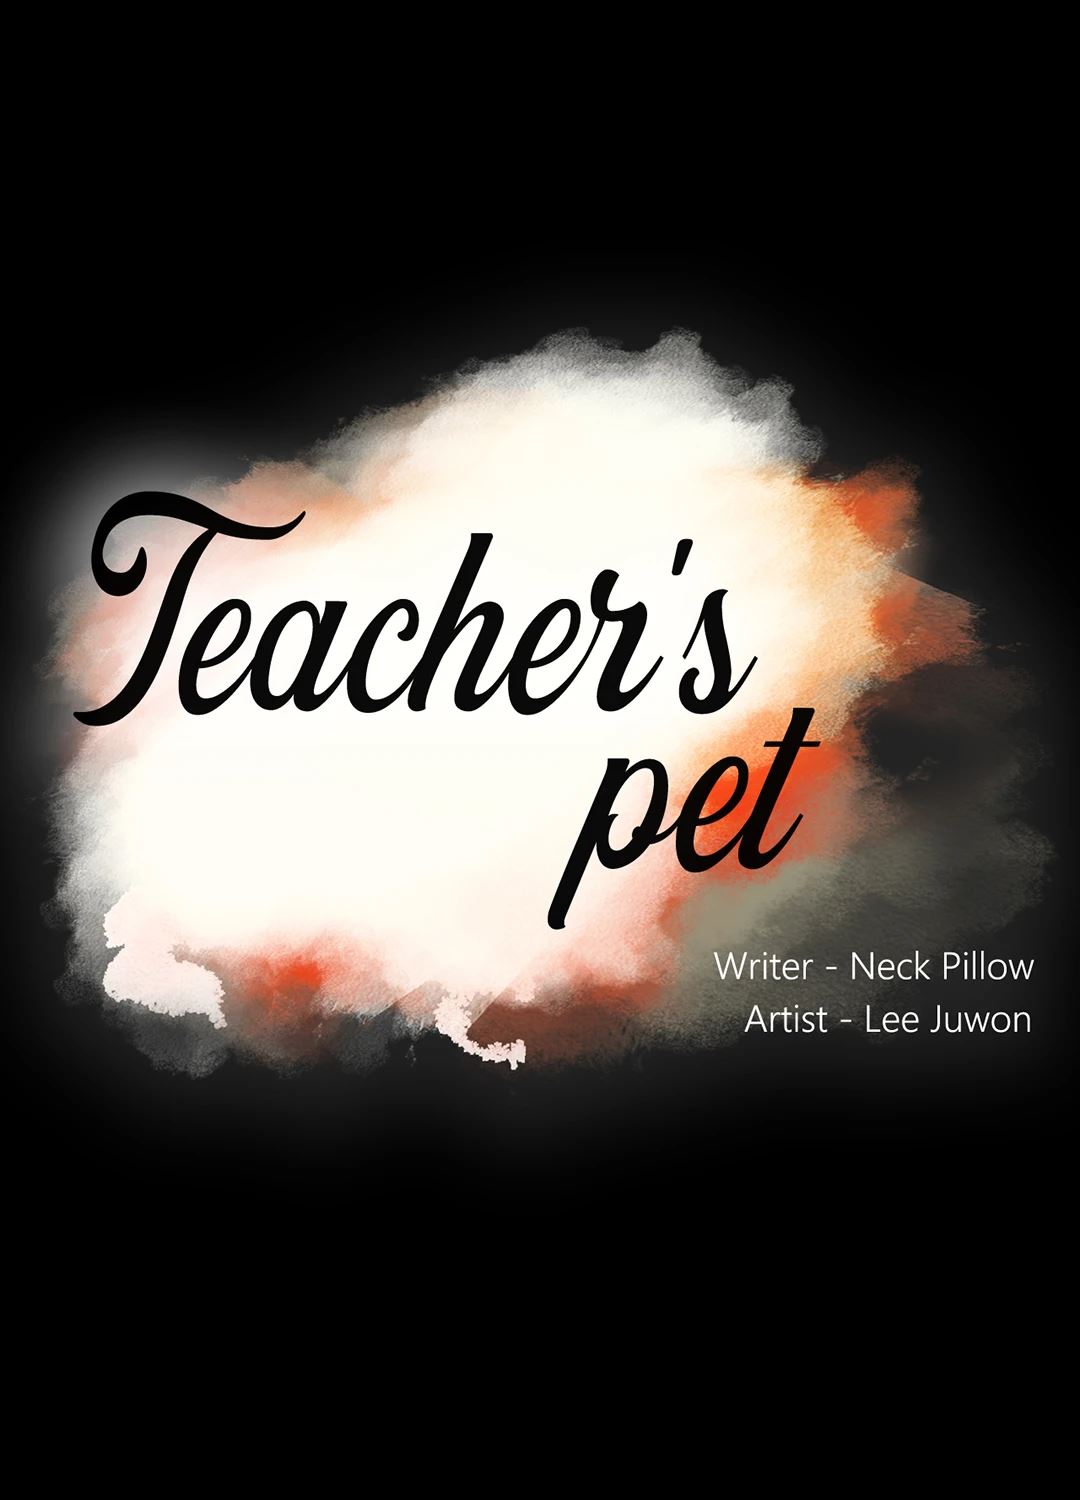 Teacher’s Pet image